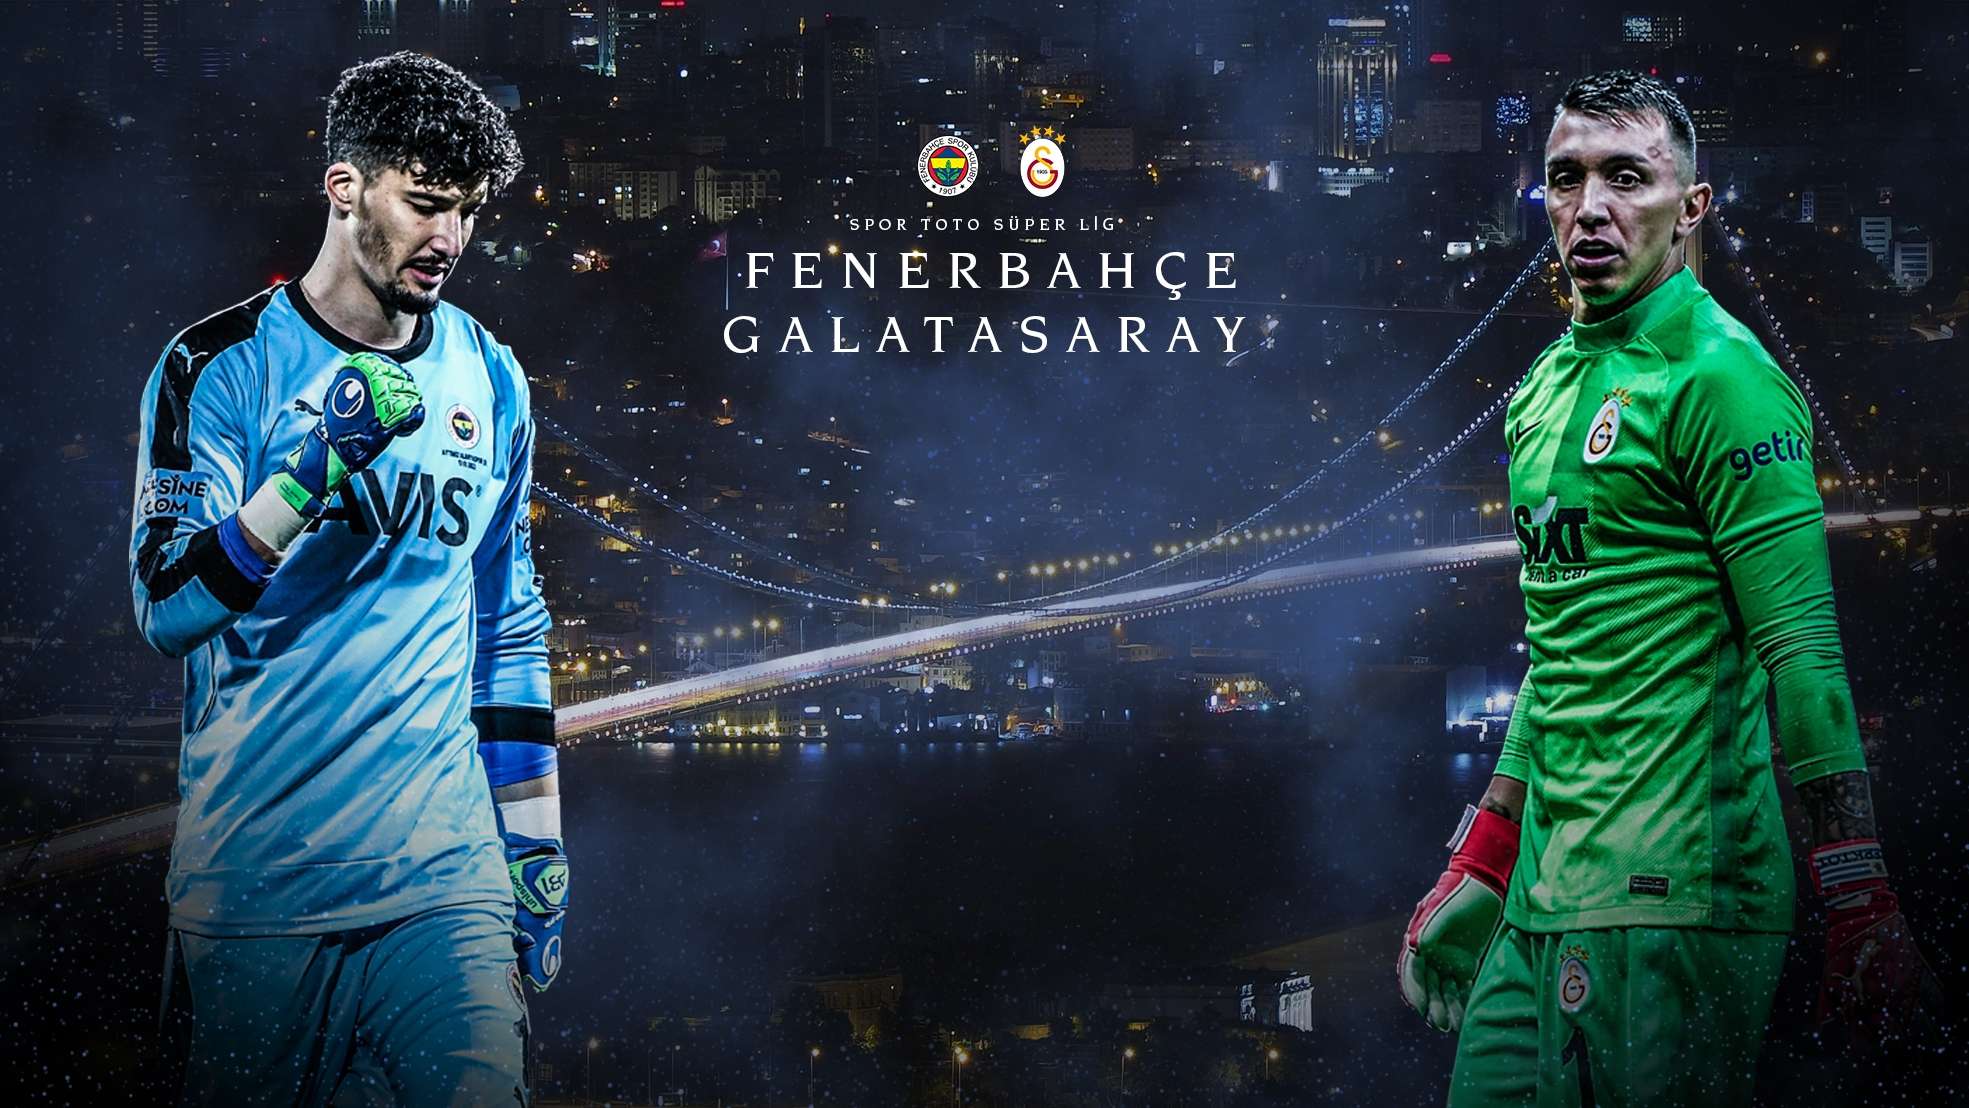 Fenerbahce vs Galatasaray GFX